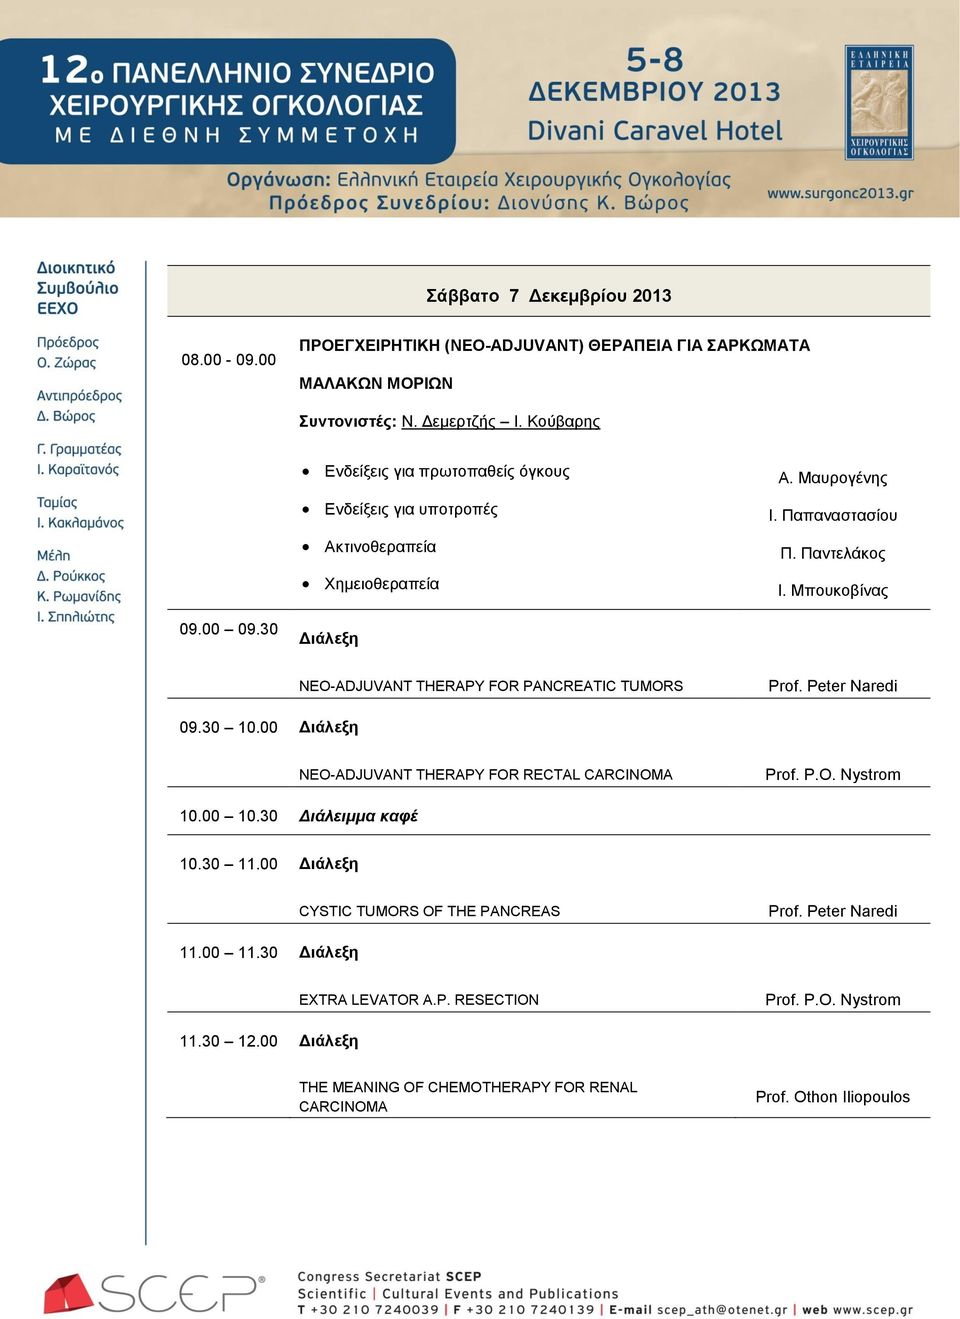 30 Διάλεξη NEO-ADJUVANT THERAPY FOR PANCREATIC TUMORS Prof. Peter Naredi 09.30 10.00 Διάλεξη NEO-ADJUVANT THERAPY FOR RECTAL CARCINOMA Prof. P.O. Nystrom 10.00 10.